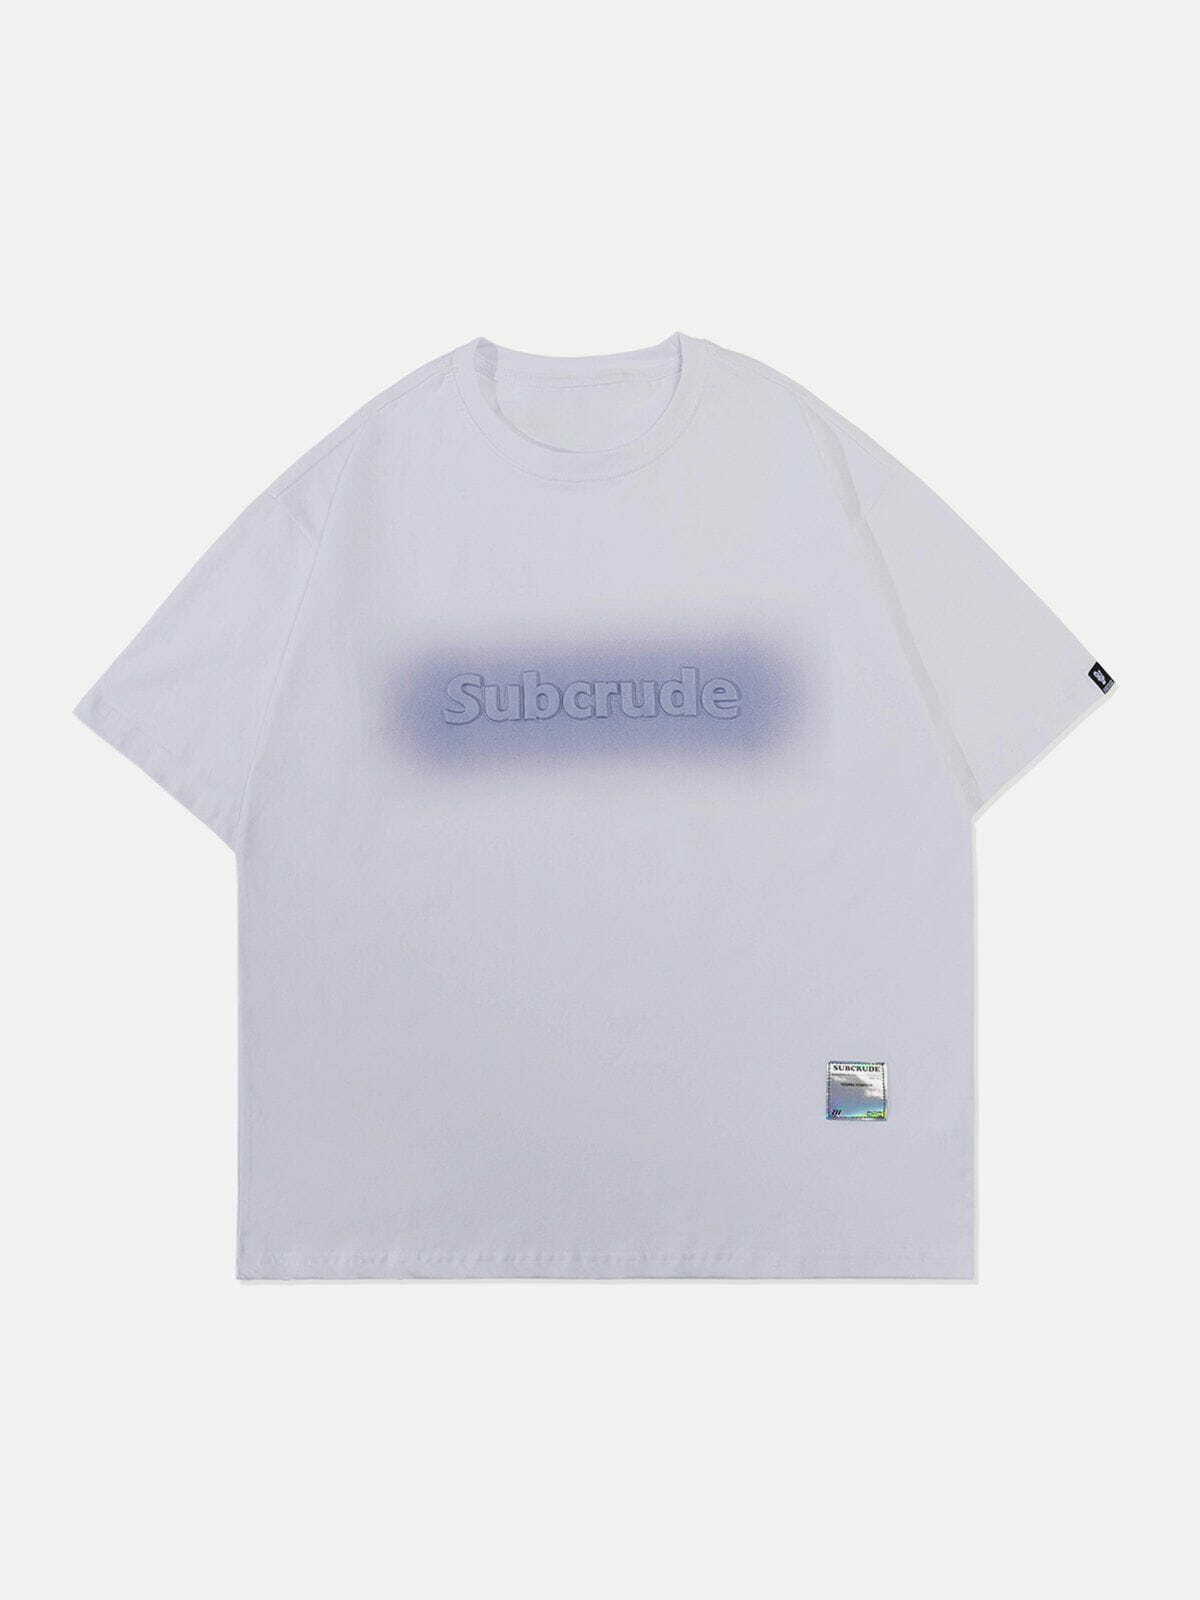 retro blur print tshirt edgy  vibrant streetwear essential 1338